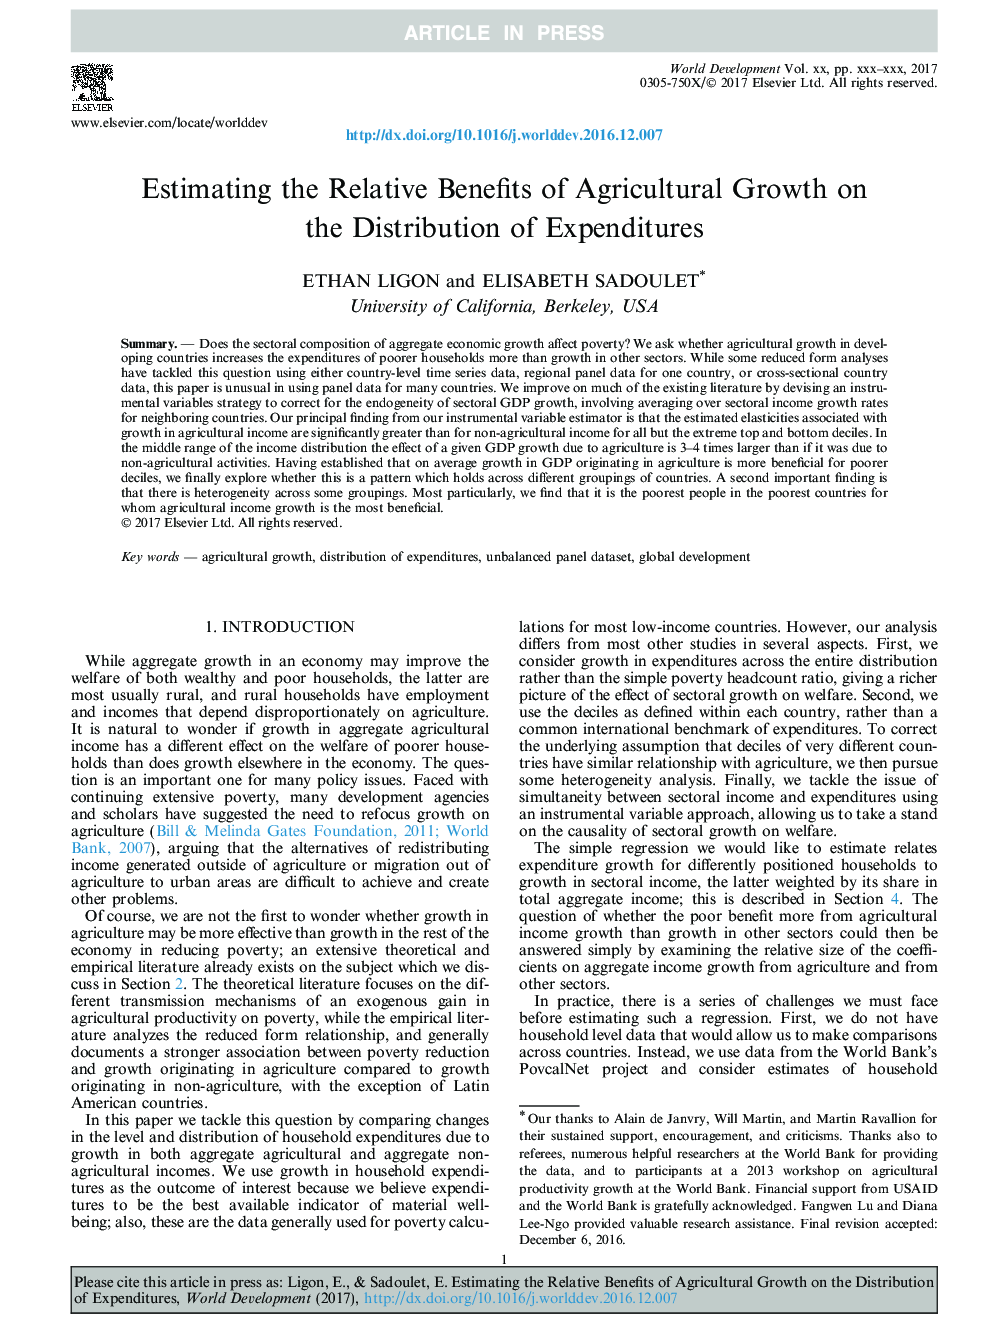 برآورد مزایای نسبی رشد کشاورزی بر توزیع هزینه ها 